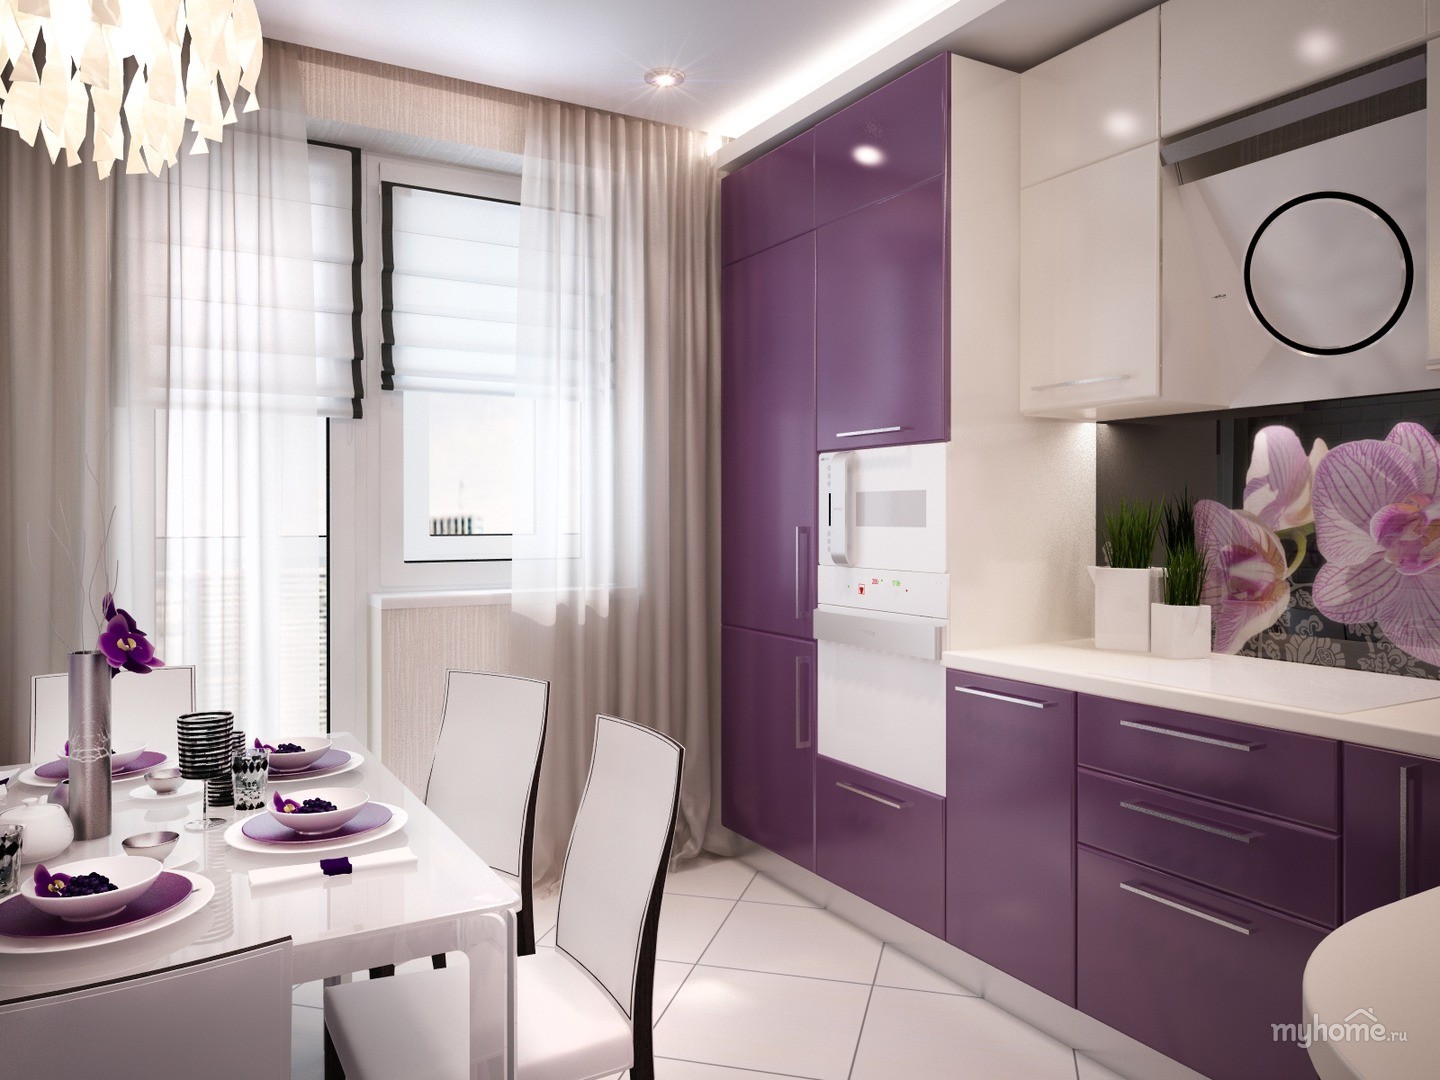 Ремонт кухни 12 кв. Кухня в сиреневых тонах. Красивые современные кухни. Кухня в фиолетовых тонах. Фиолетовая кухня в интерьере.